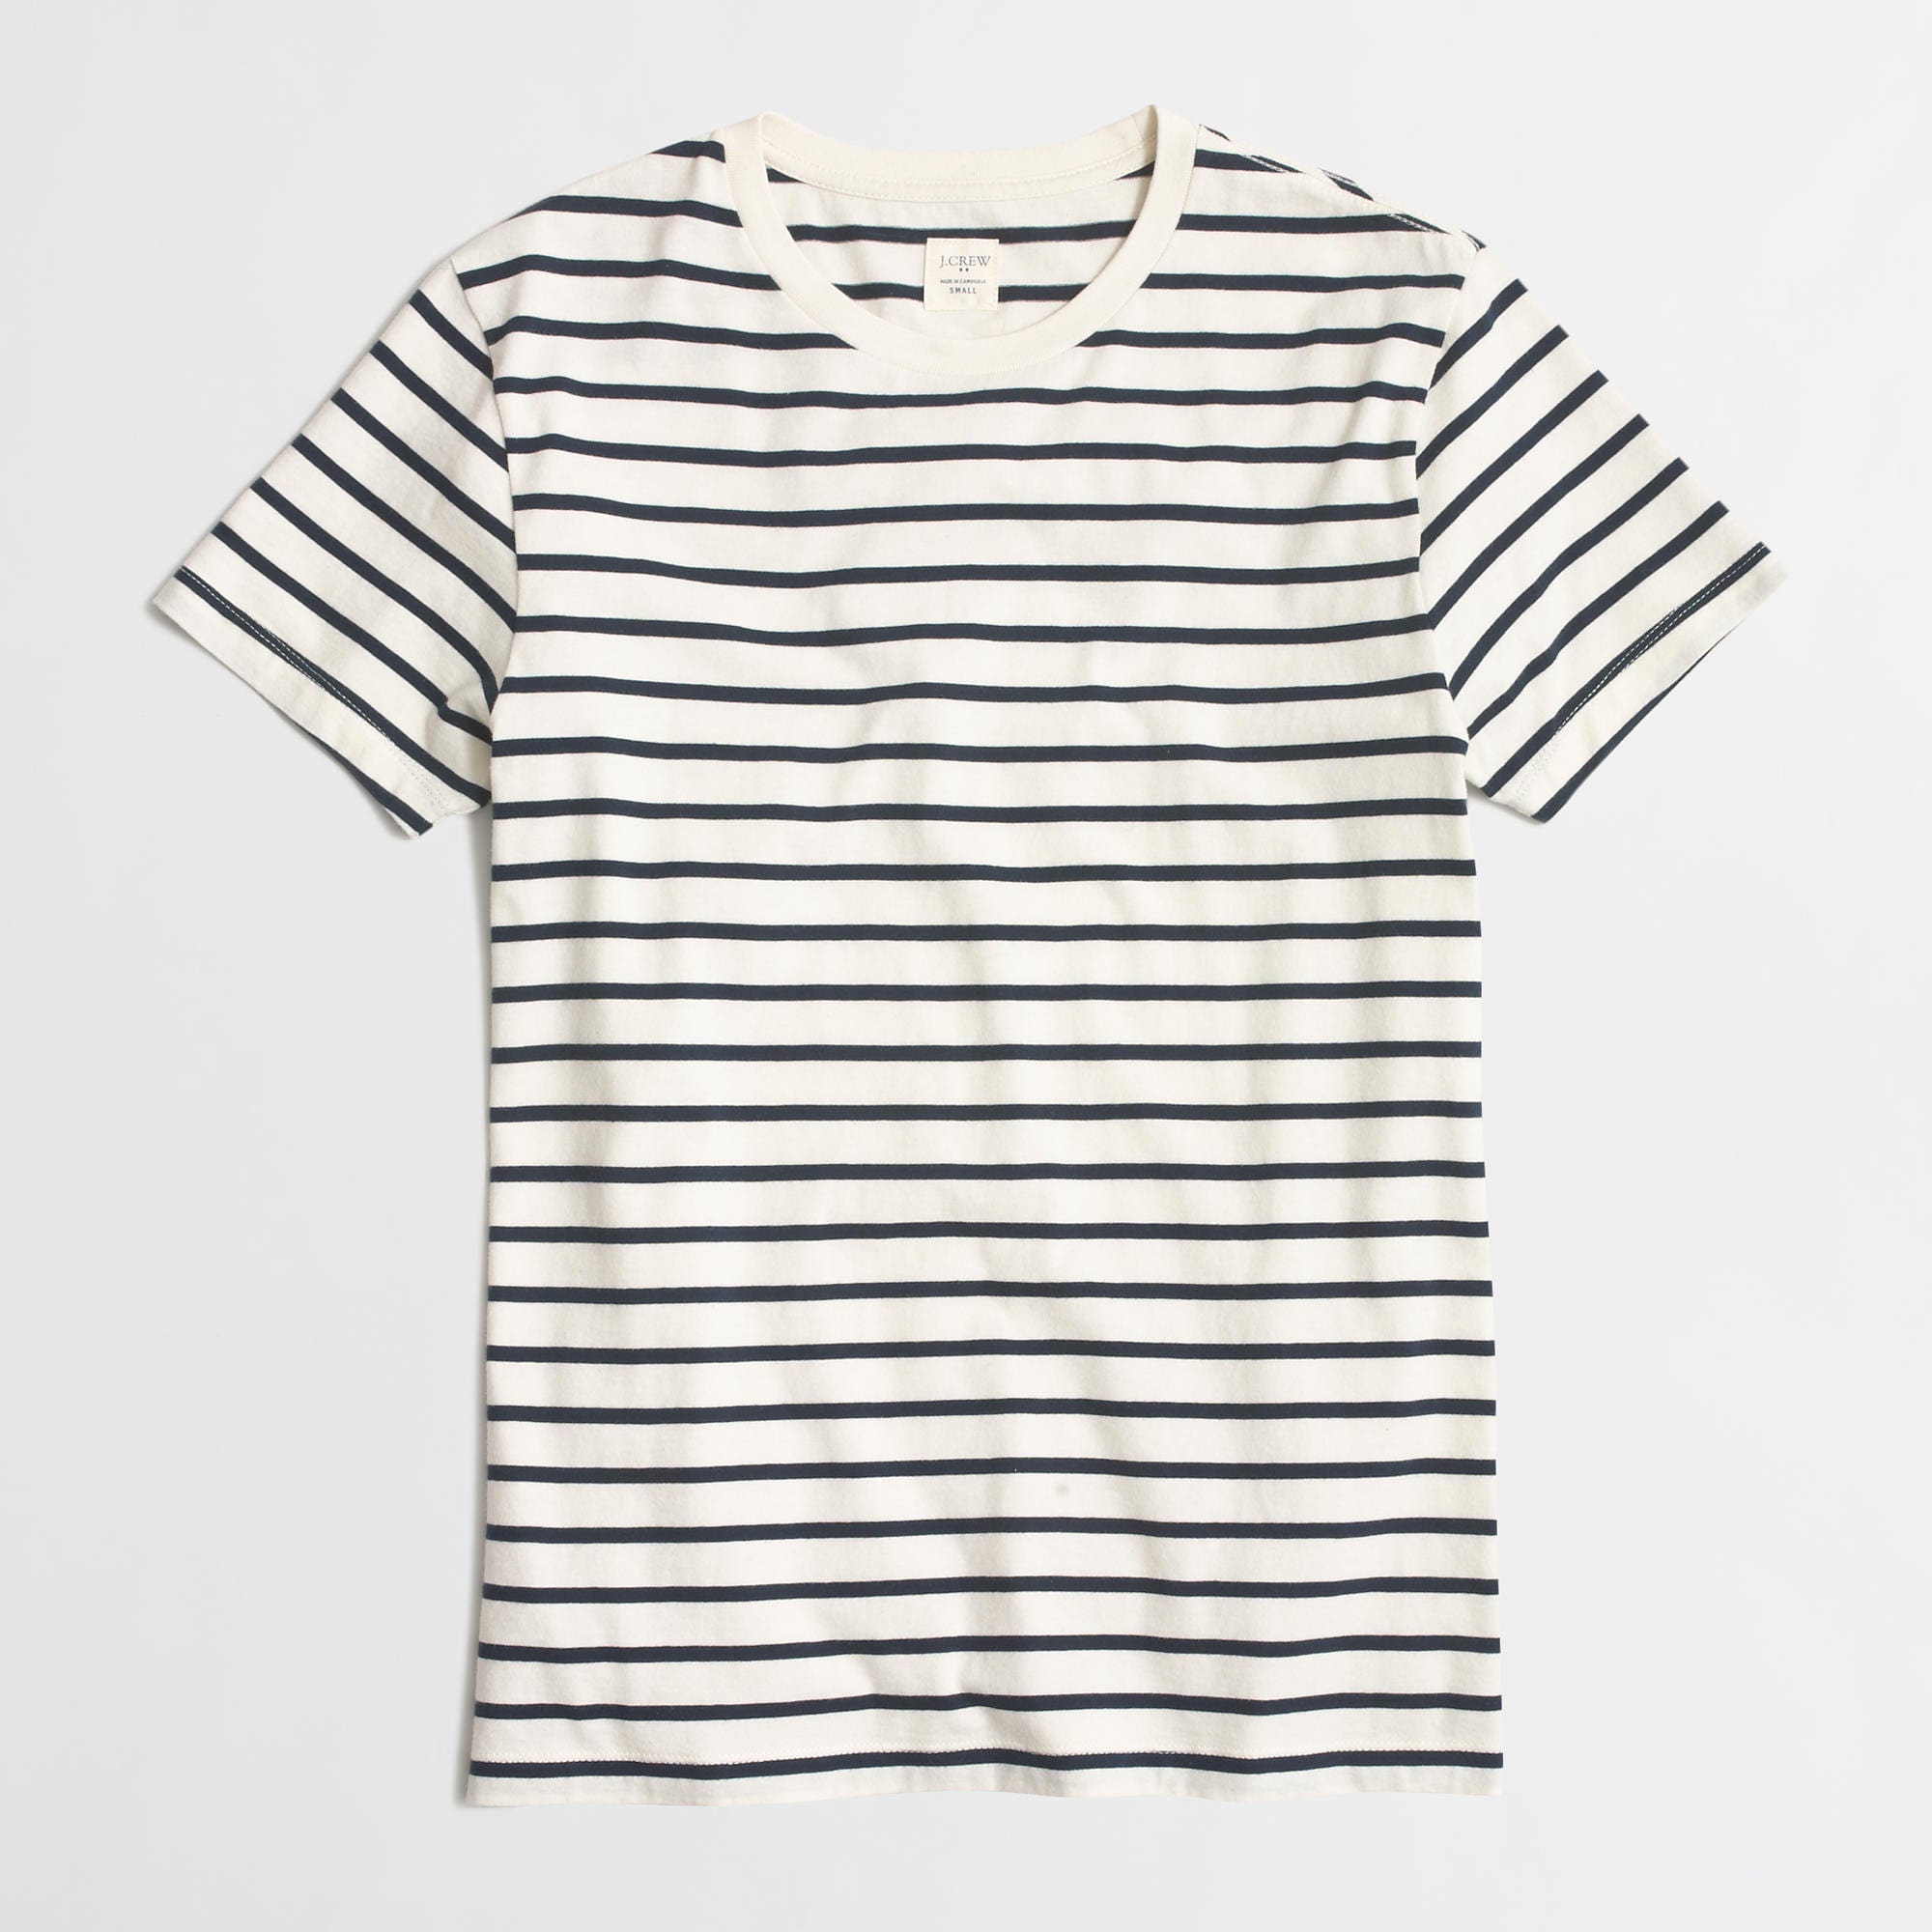 Black & White Stripes T Shirt 2016 - 2017